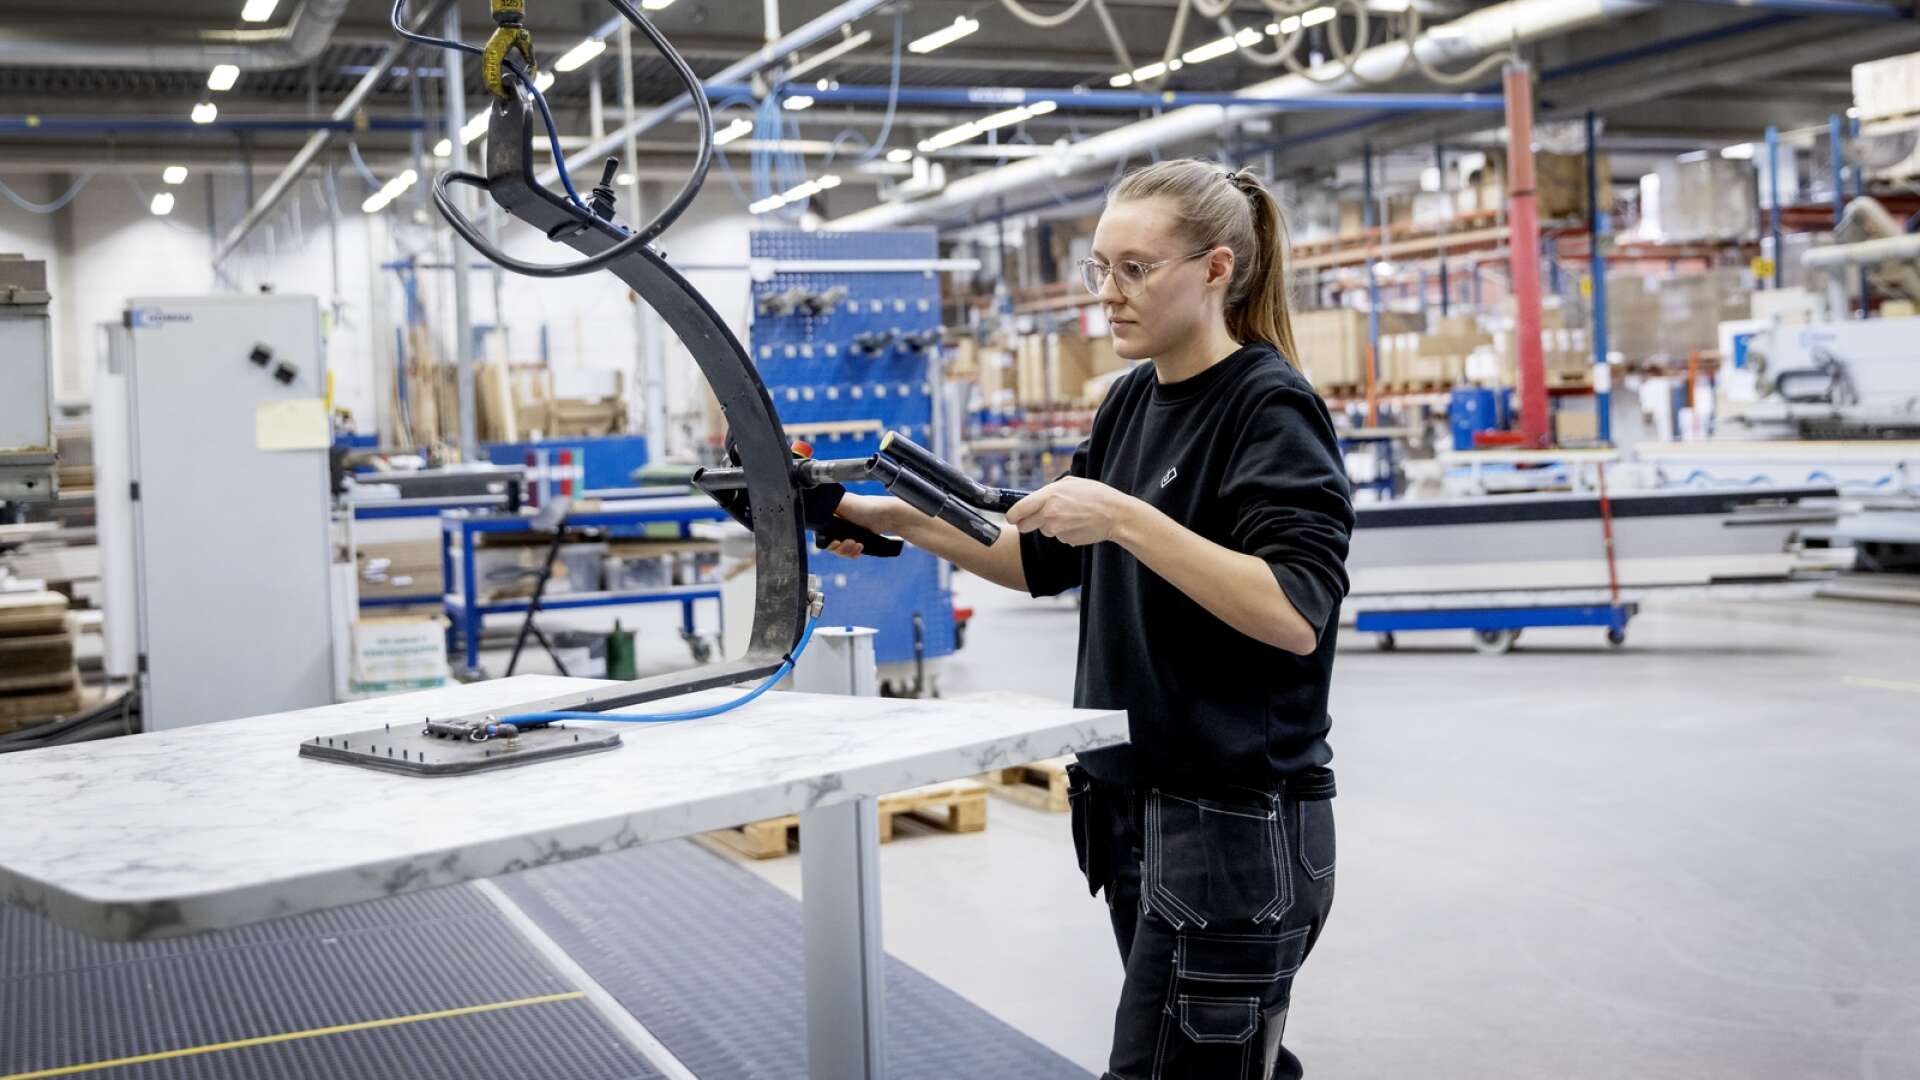 De kommande fem åren kommer efterfrågan av ny arbetskraft inom industrin i Skaraborg att öka med 10-15 procent, enligt en delrapport gjord av Skaraborgs kommunalförbund. Det är en ljus prognos, enligt projektledare Johan Lindell, samtidigt som det innebär utmaningar.